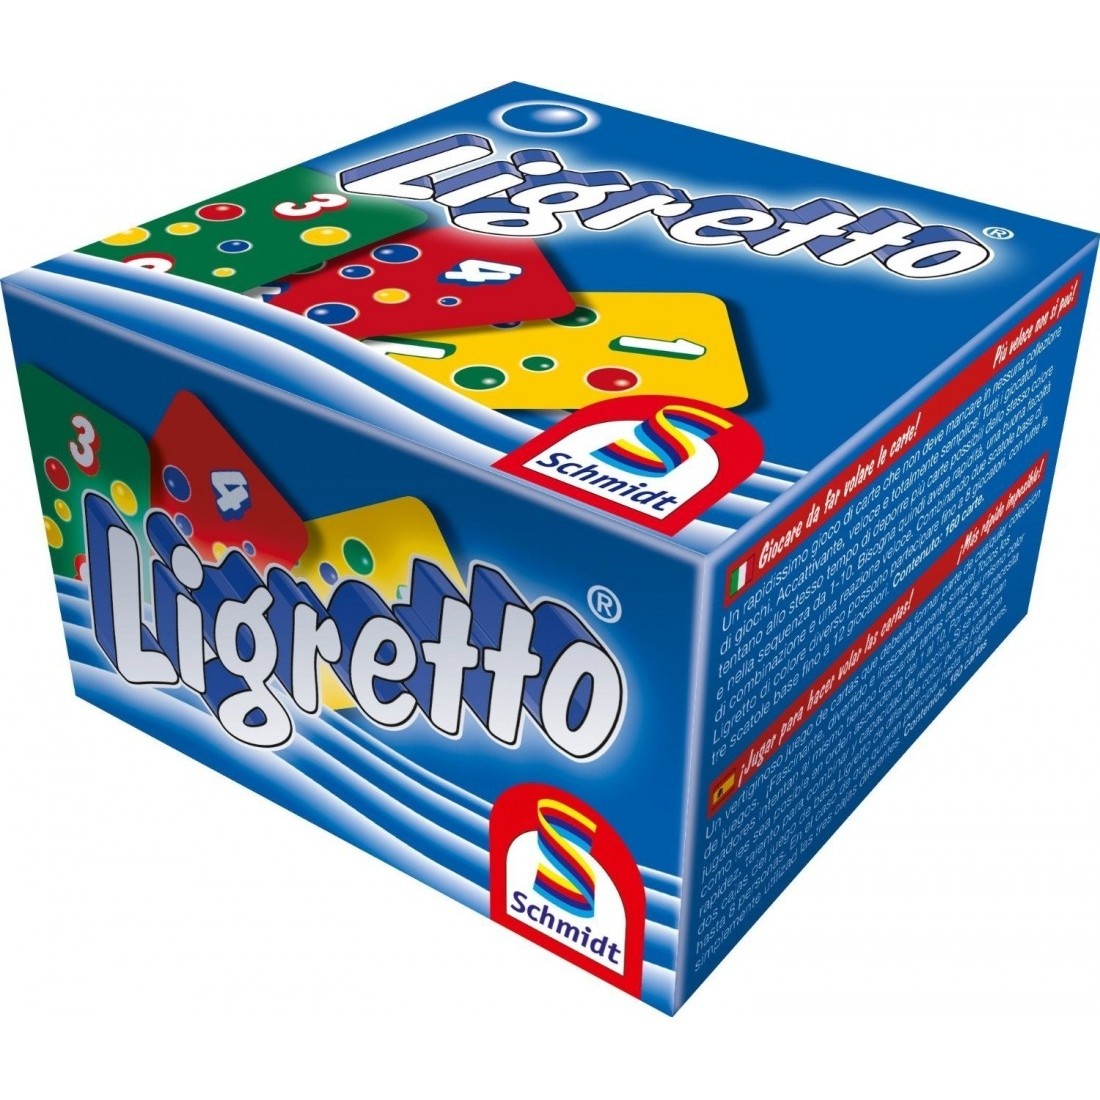 Ligretto bleu - Jeux de société - Acheter sur L'Auberge du Jeu - Suisse